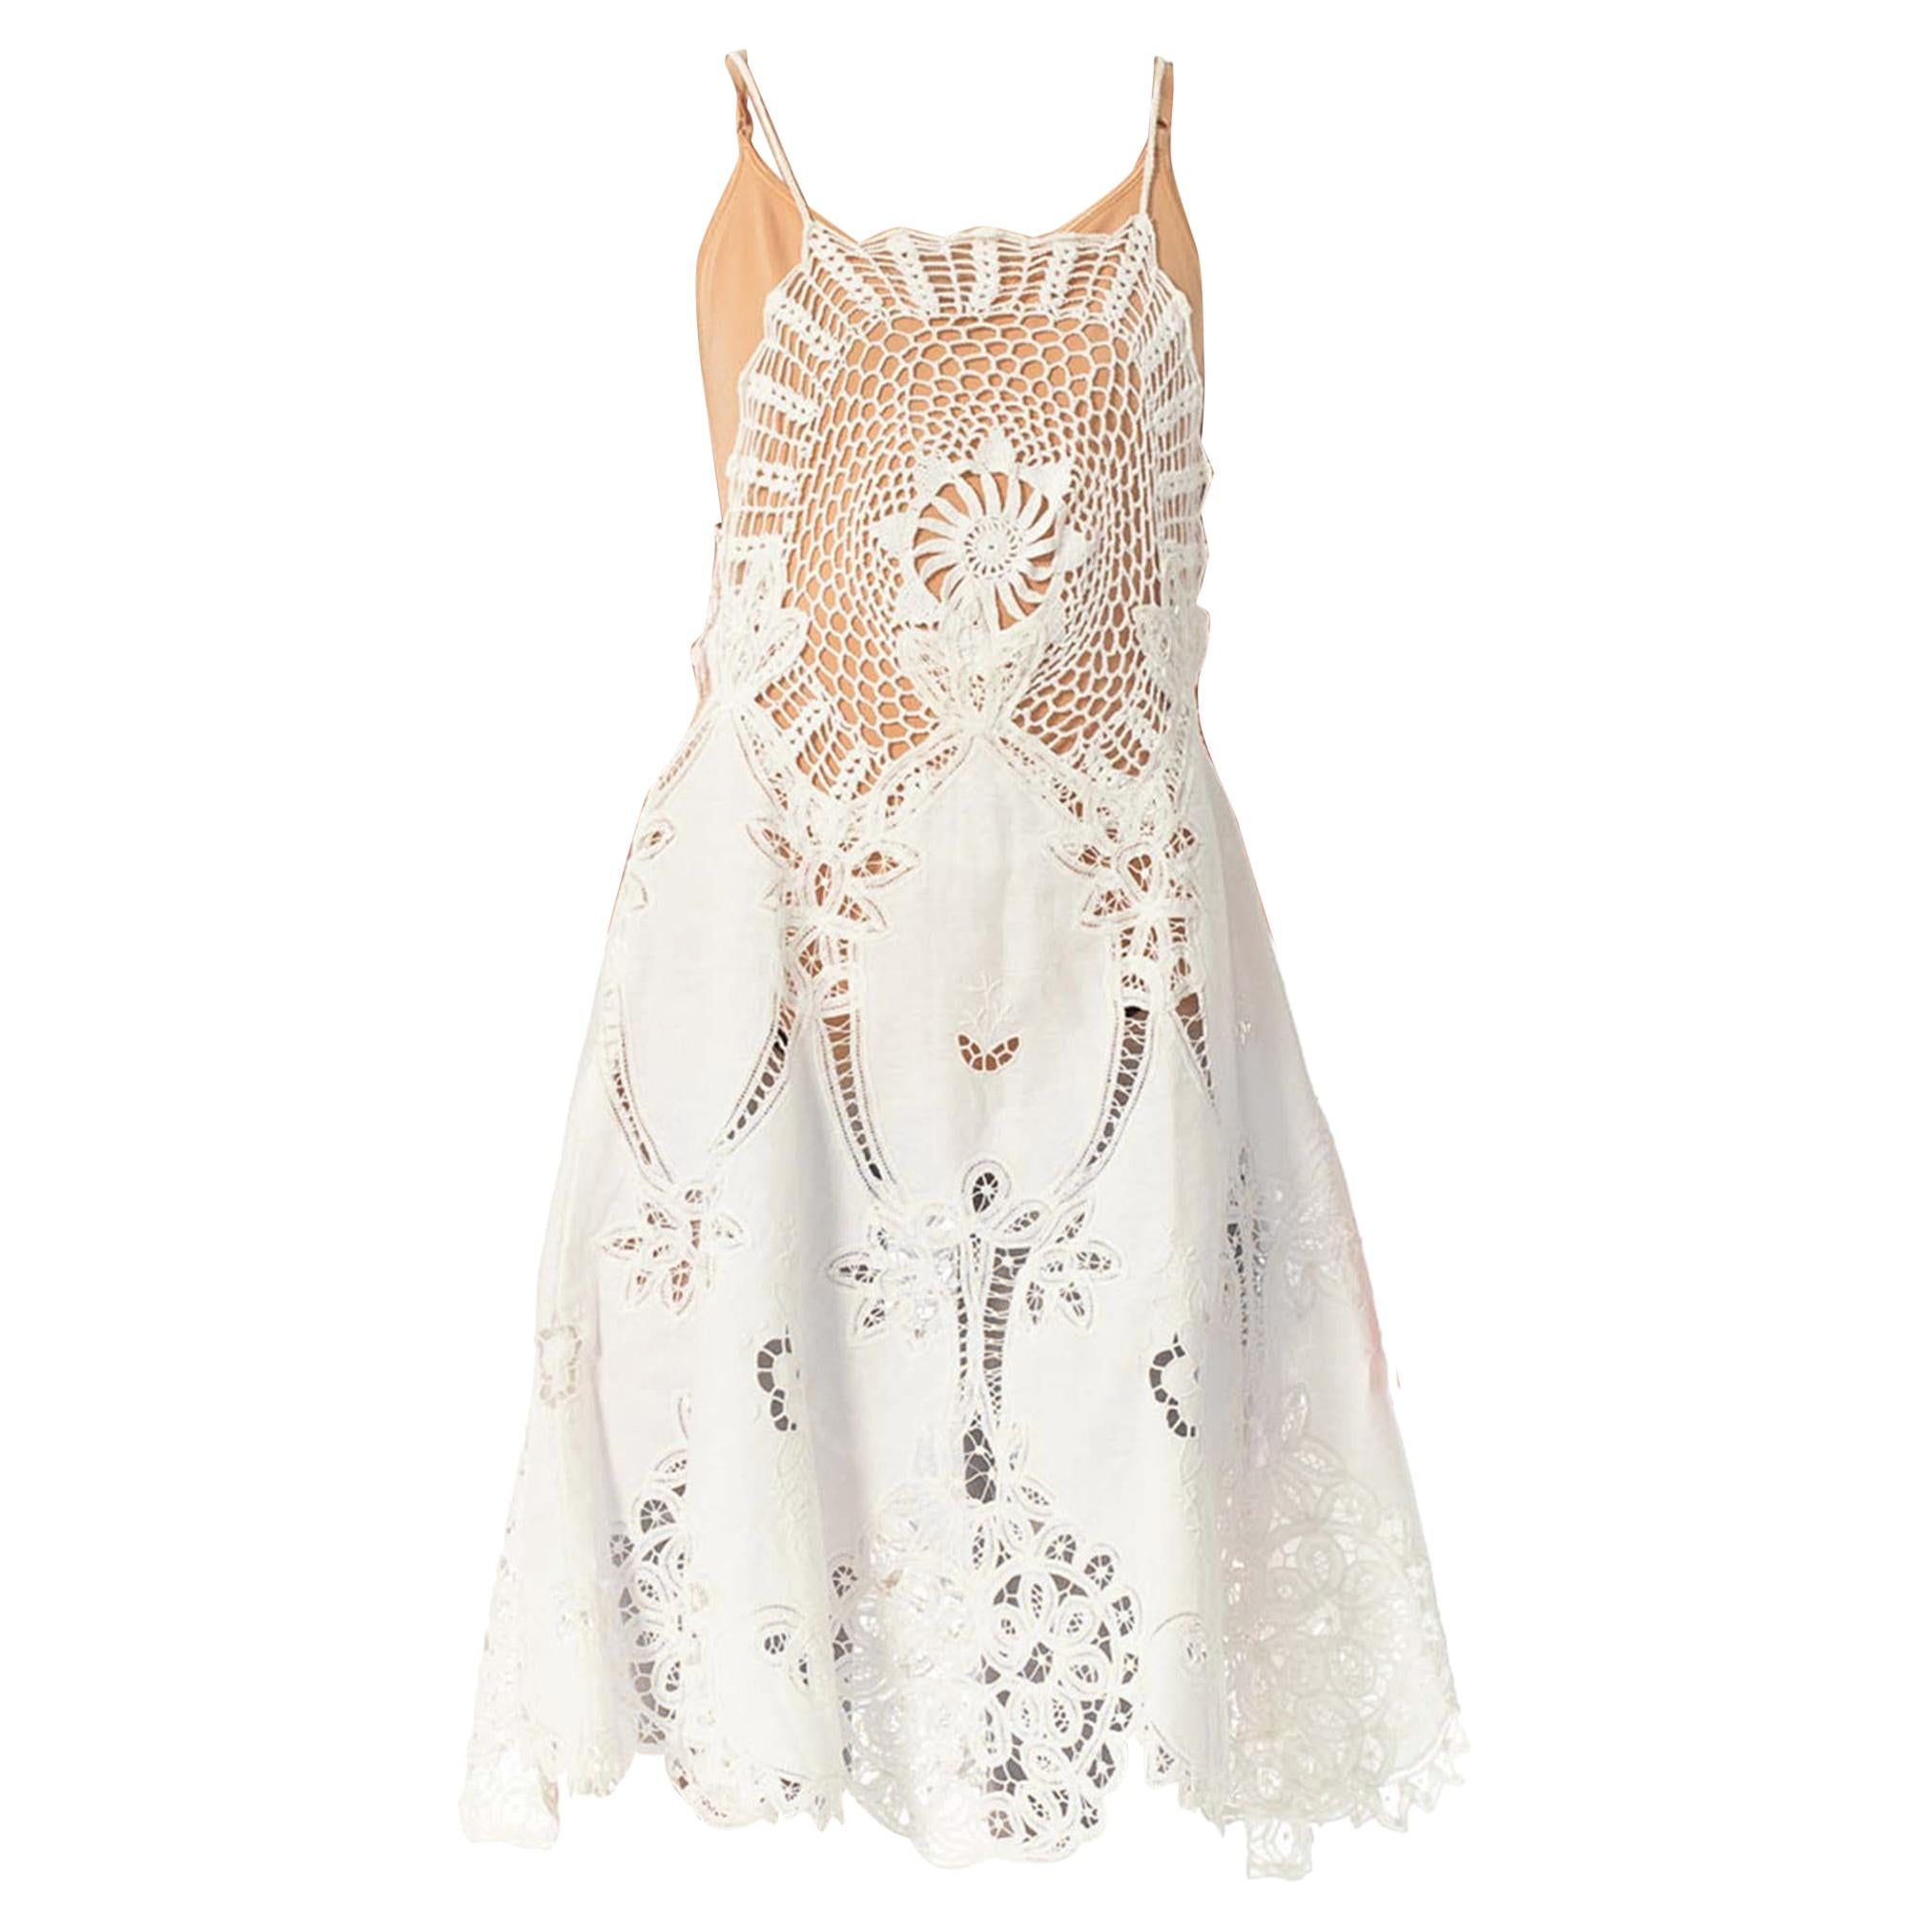 1970S White Cotton Lace Crochet Top Dress